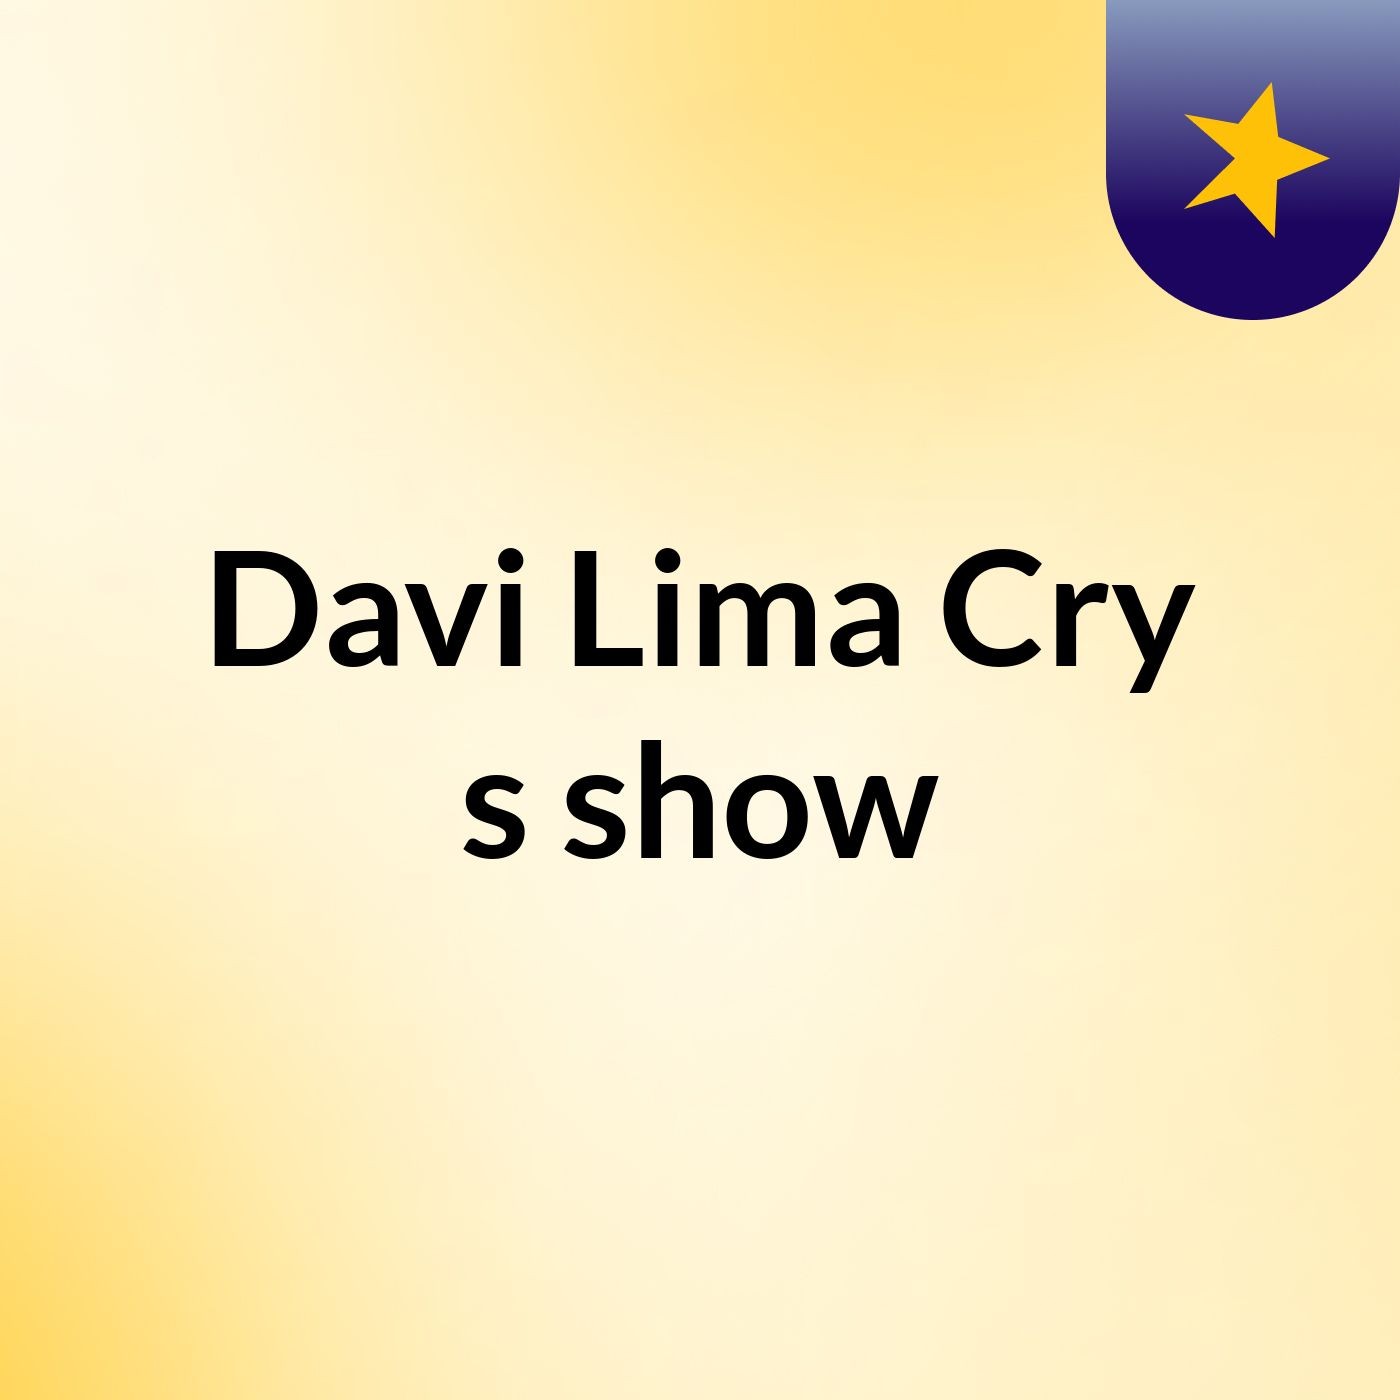 Davi Lima Cry's show